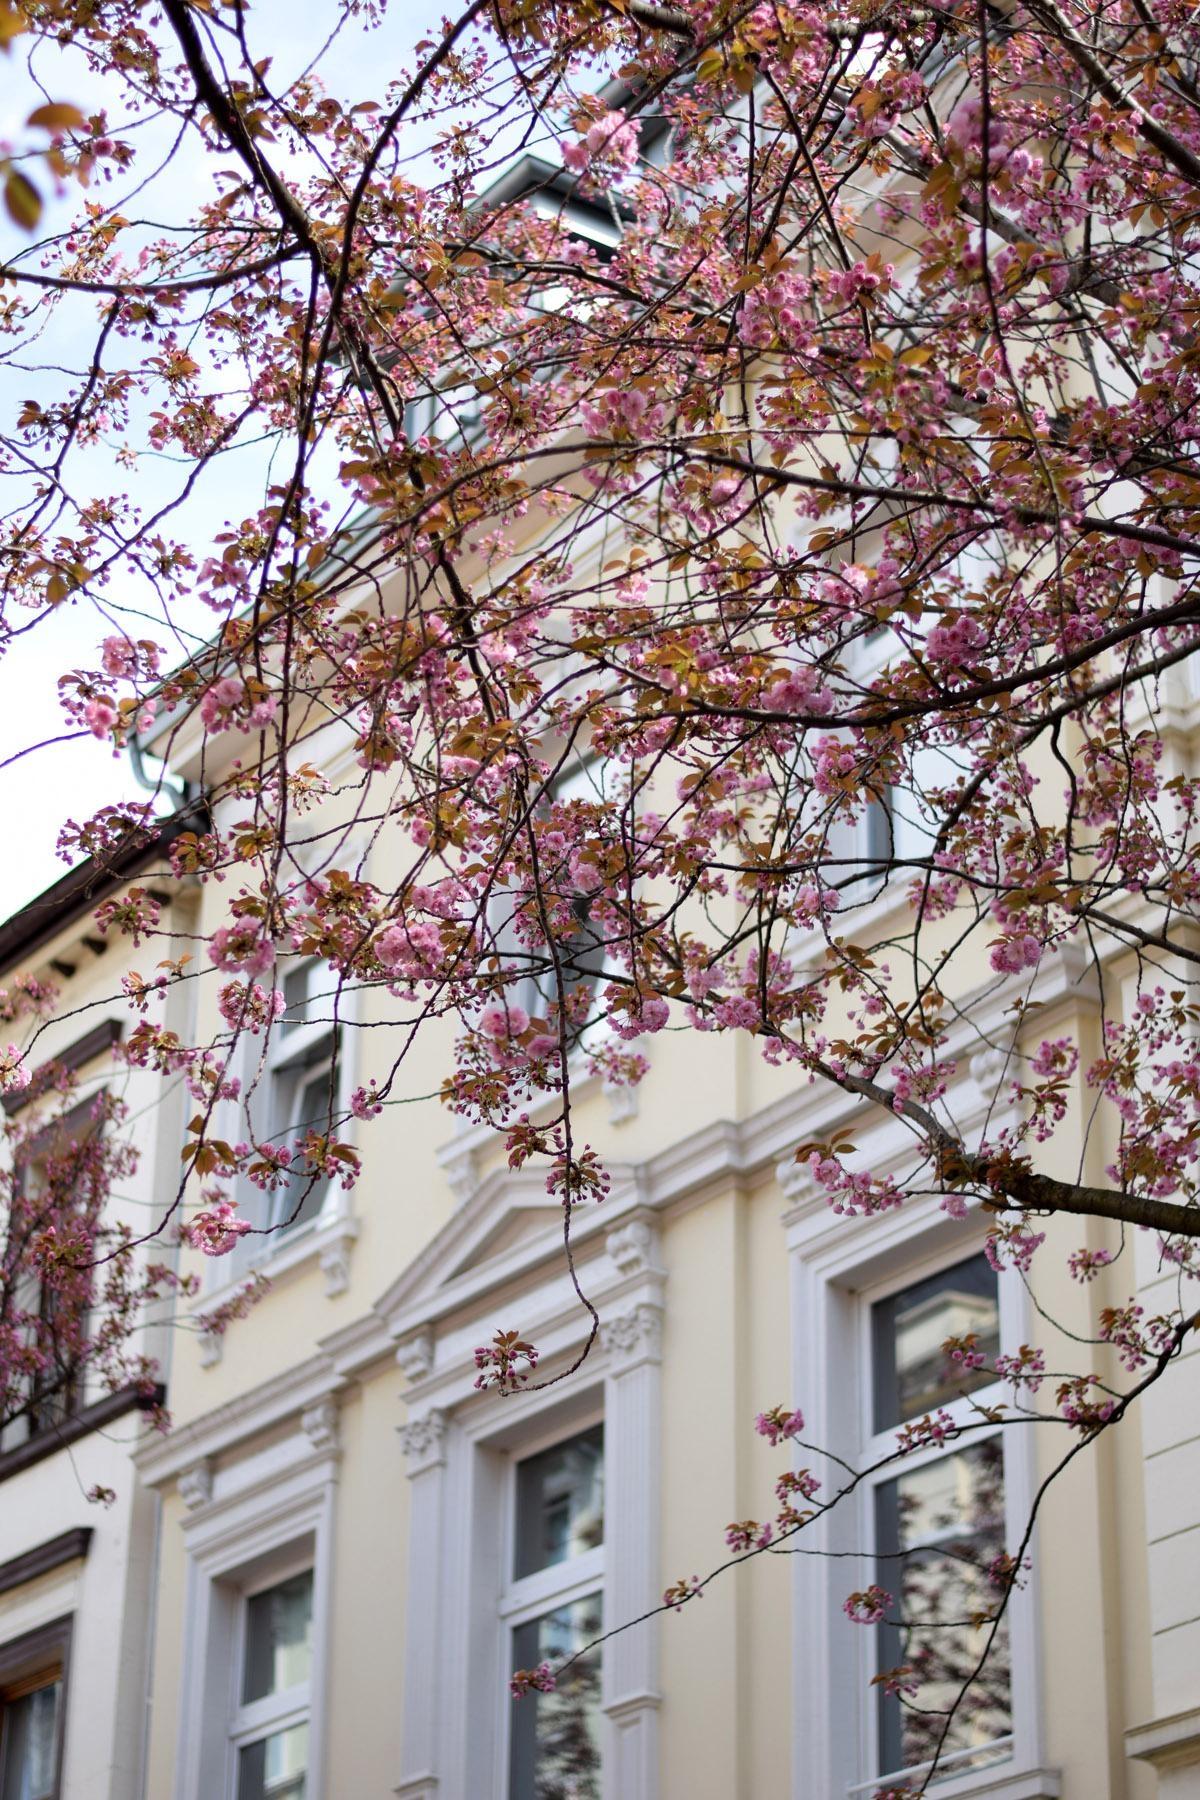 Es geht los mit der Kirschblüte...
#Kirschblütenzeit #flowerpower #Blütenzauber #Frühling #Altbau